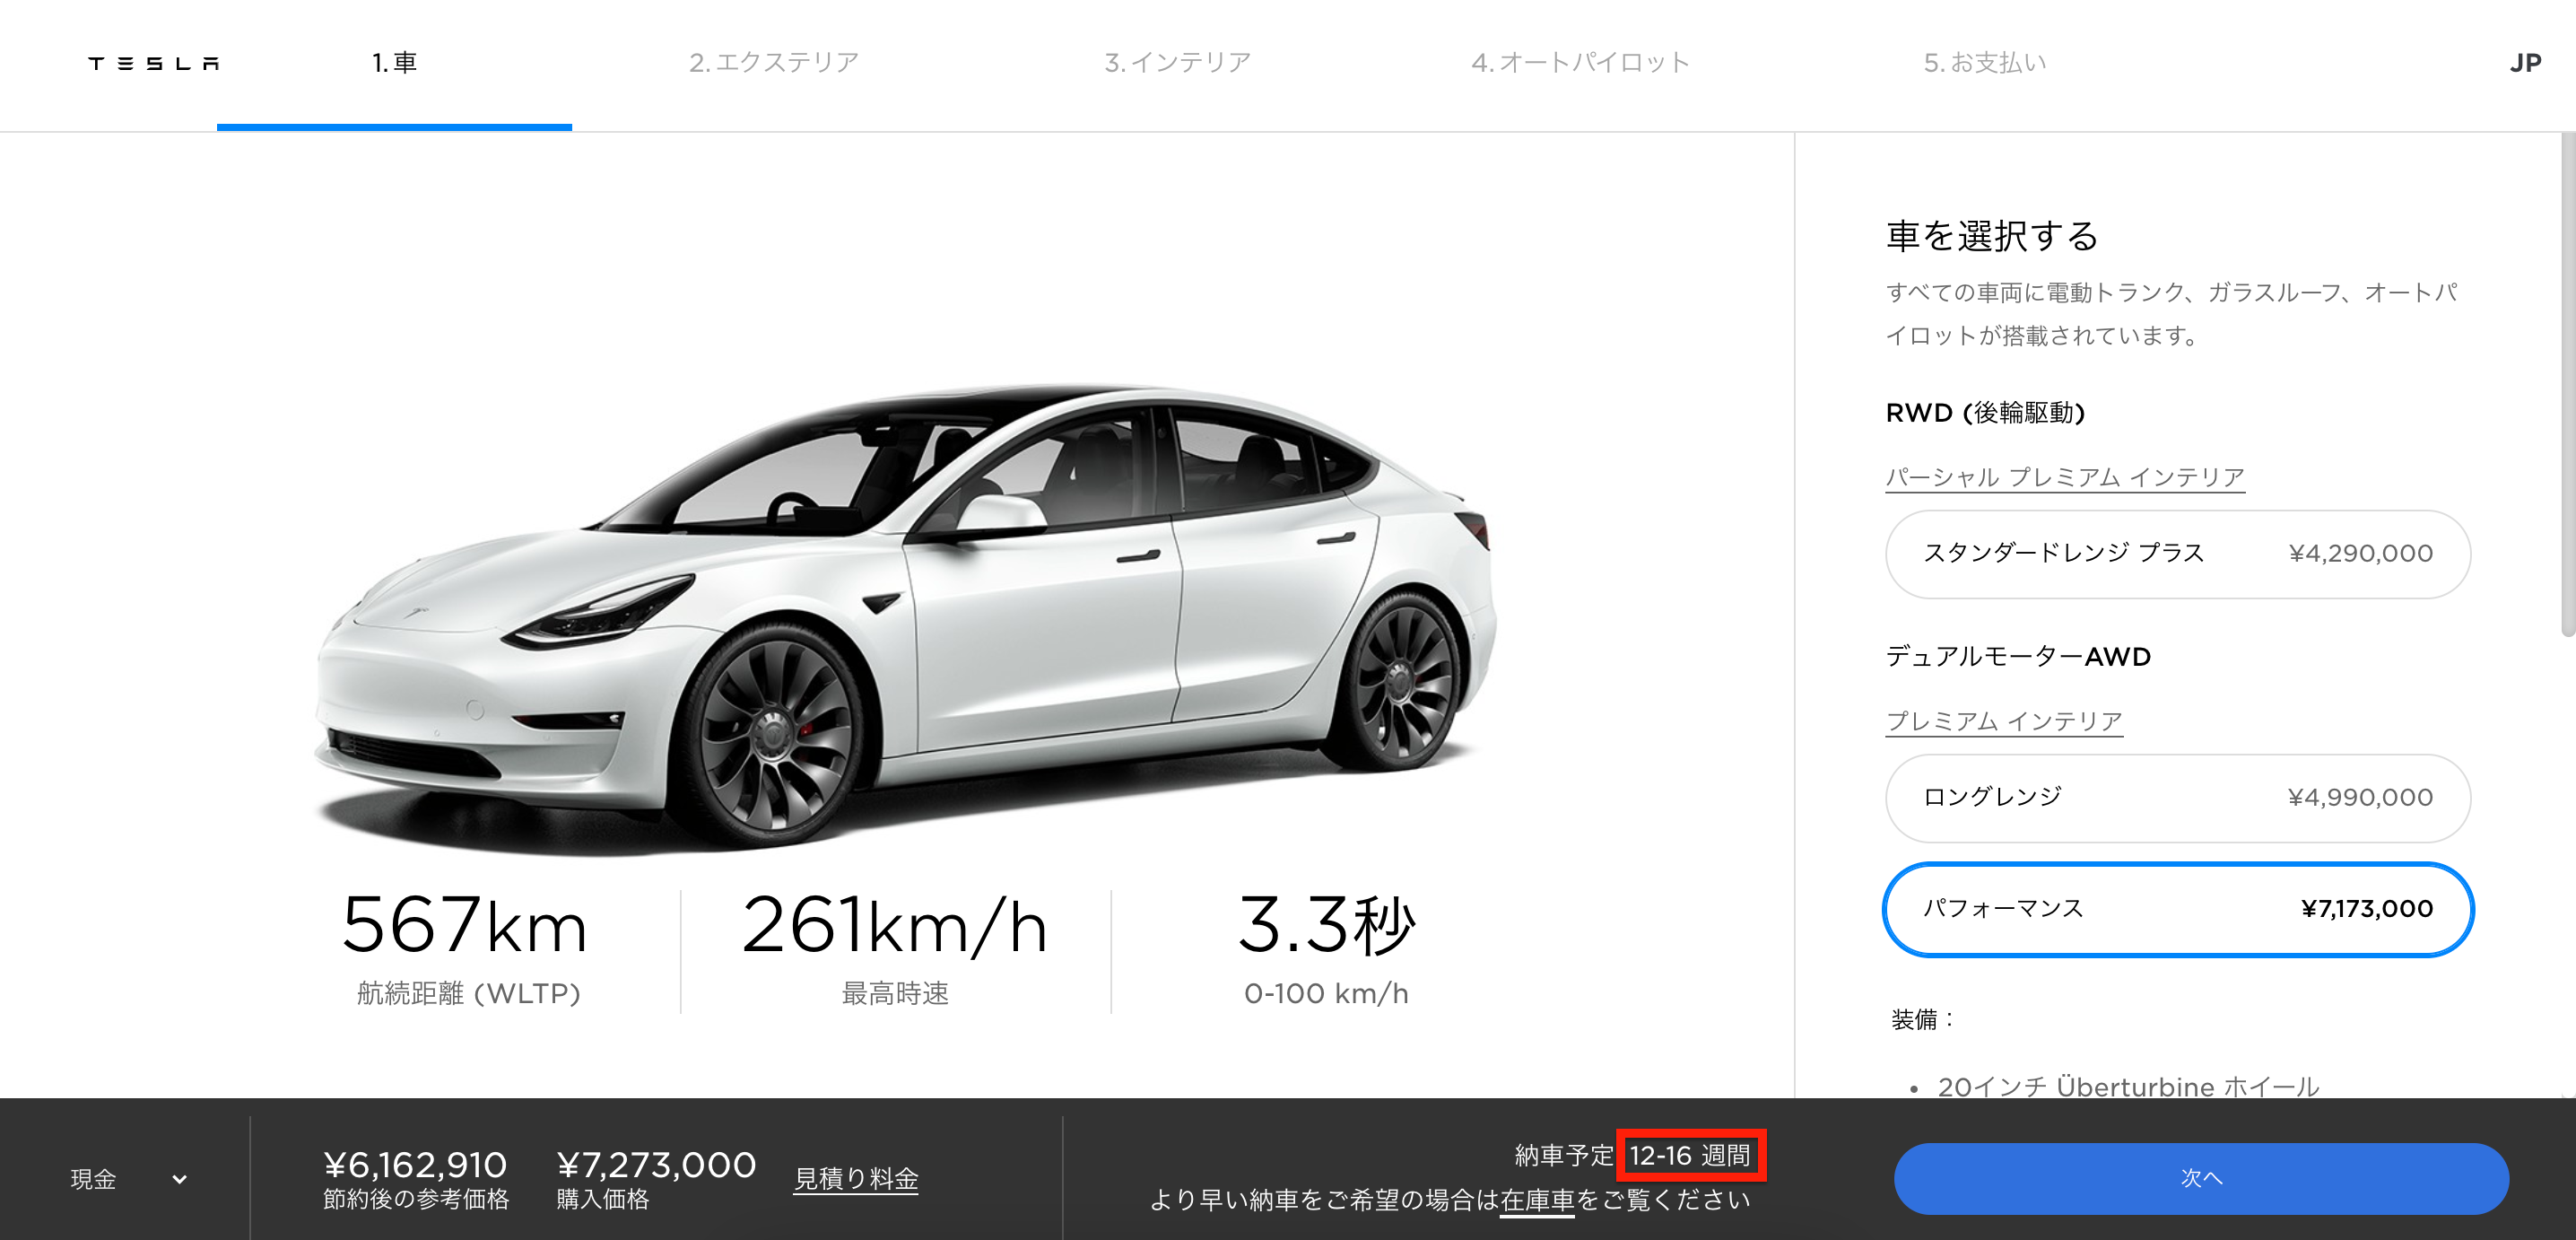 Tesla Japan deliveries